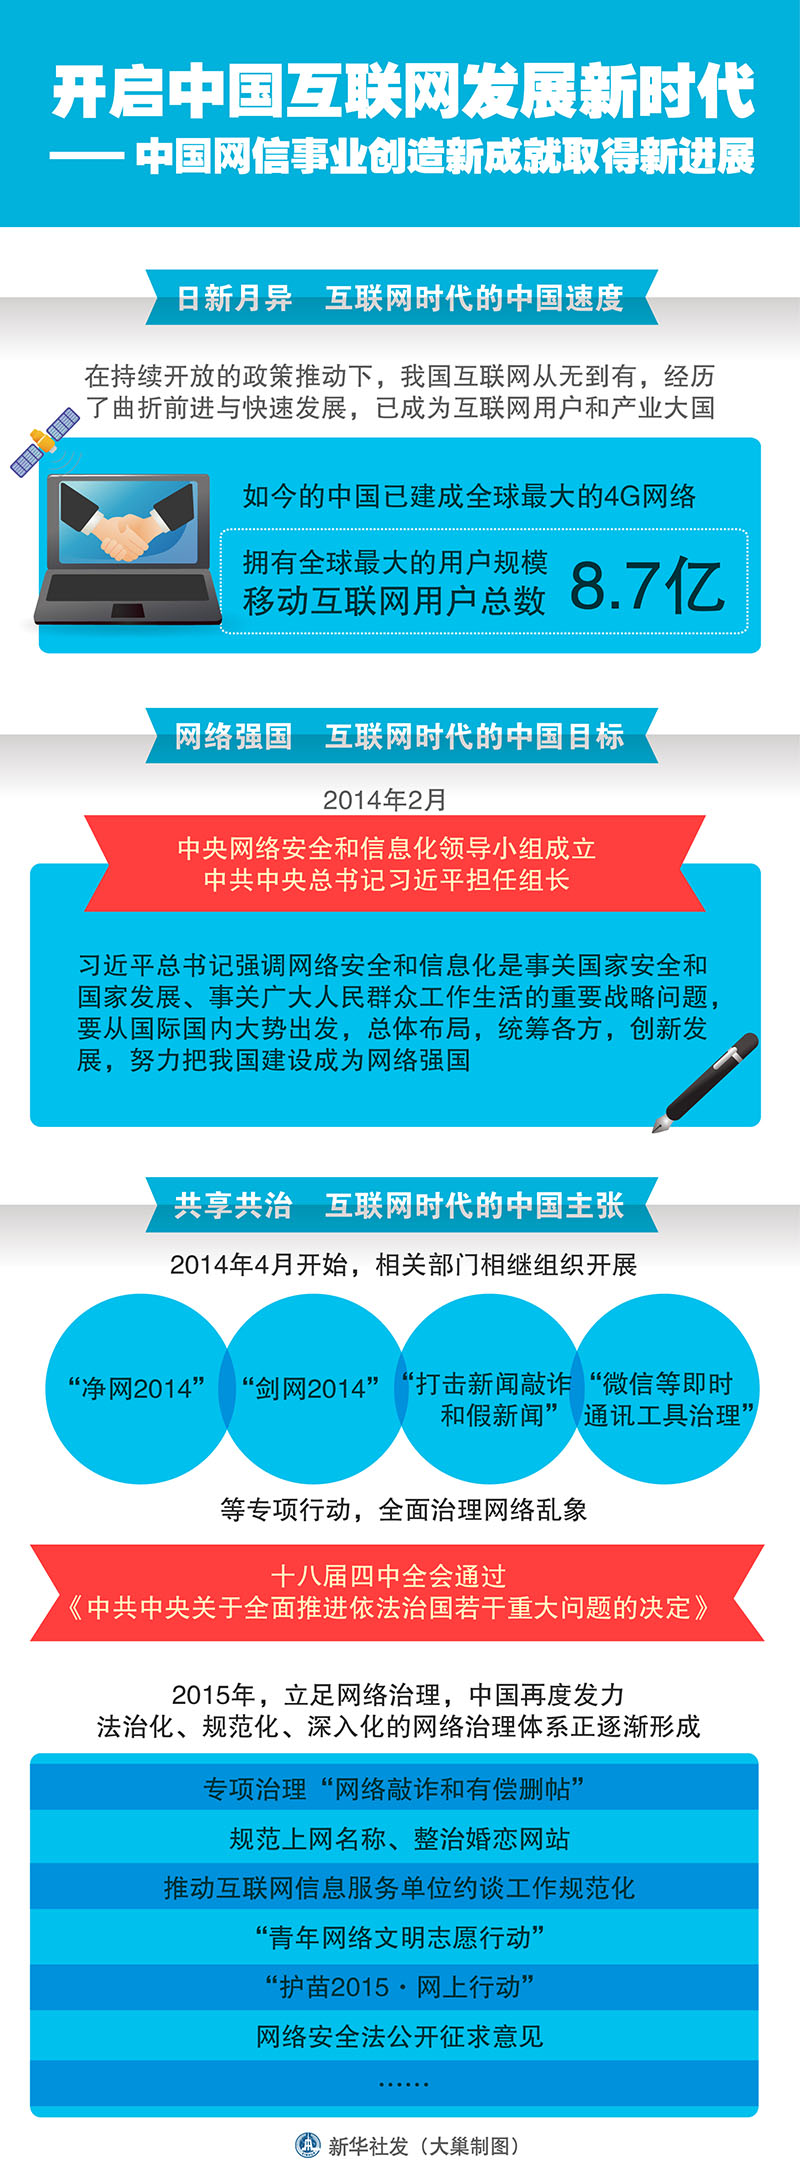 开启中国互联网发展新时代--中国网信事业创造